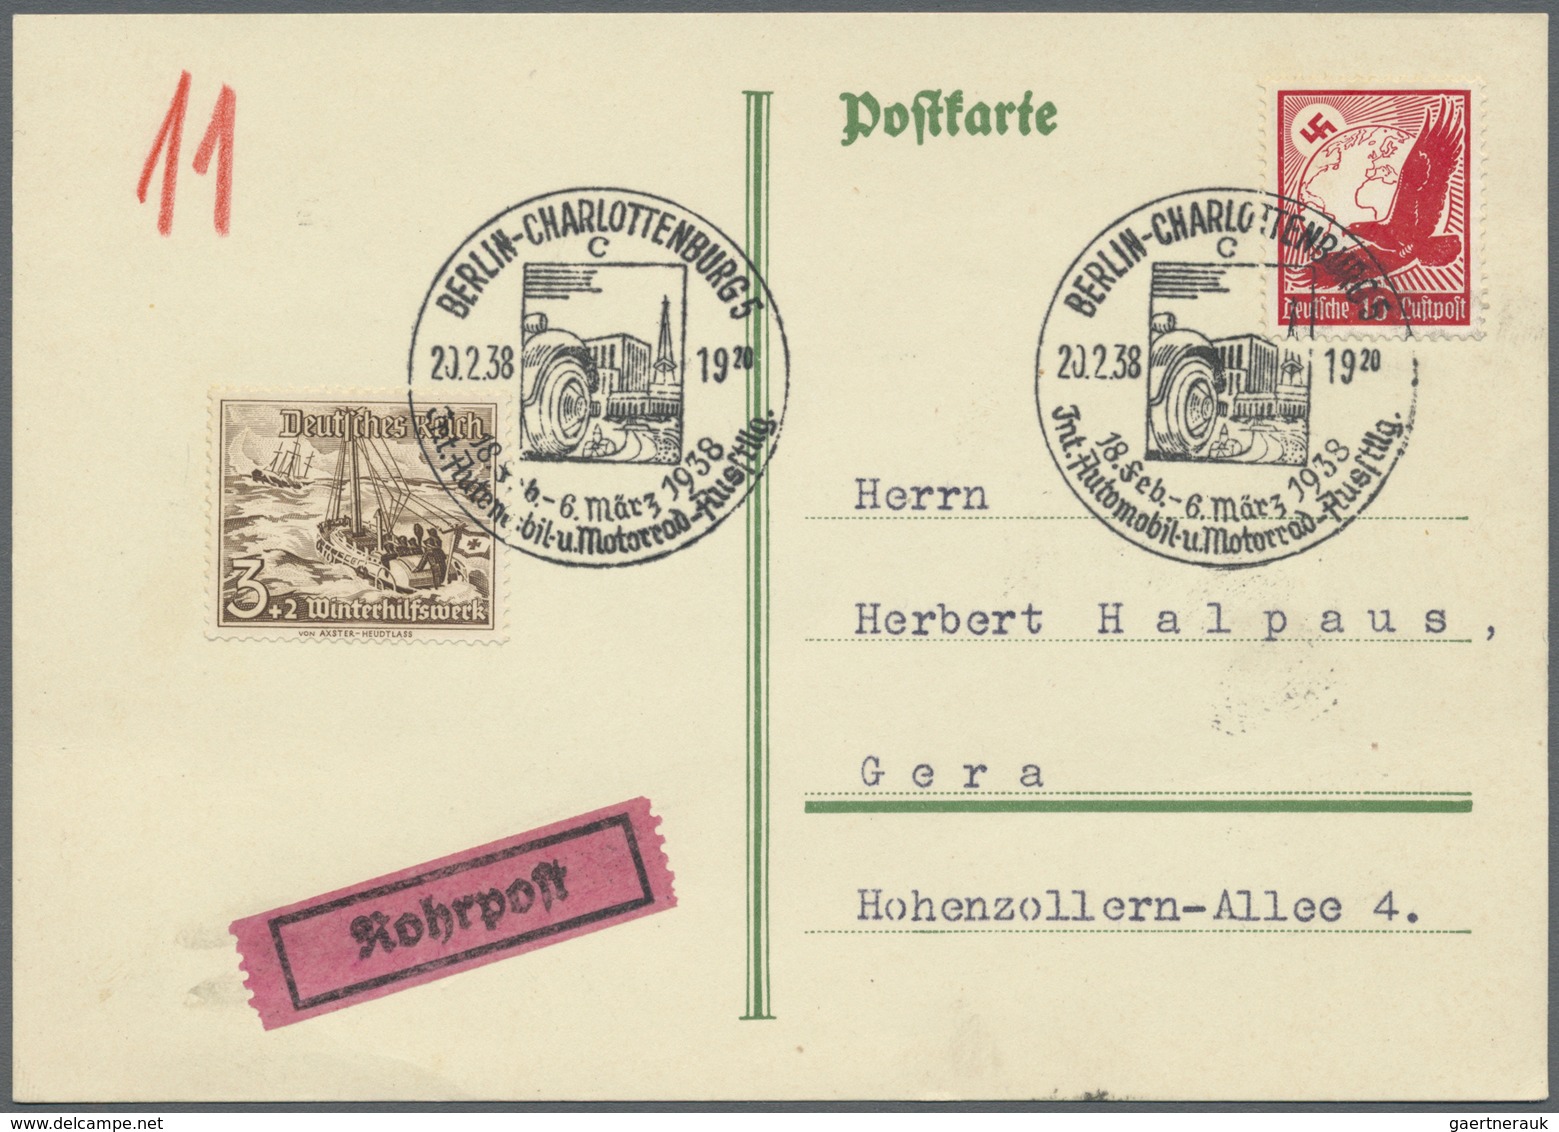 Br Thematik: Verkehr-Auto / Traffic-car: 1938, Dt. Reich. Rohrpost-Minuten-SST "Berlin-Charlottenburg 2 - Cars